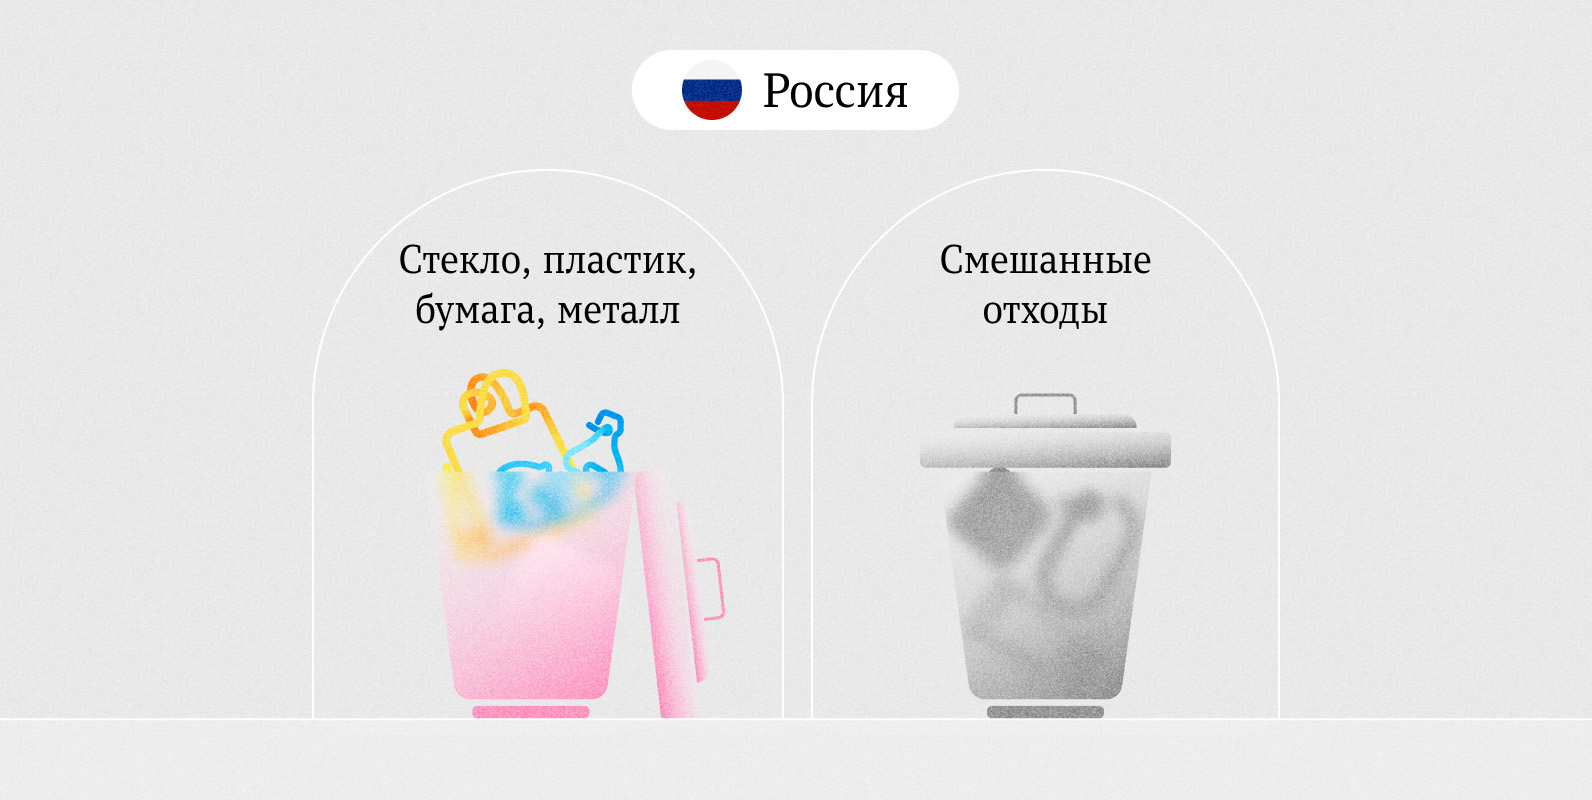 Как разделяют отходы в разных странах Россия